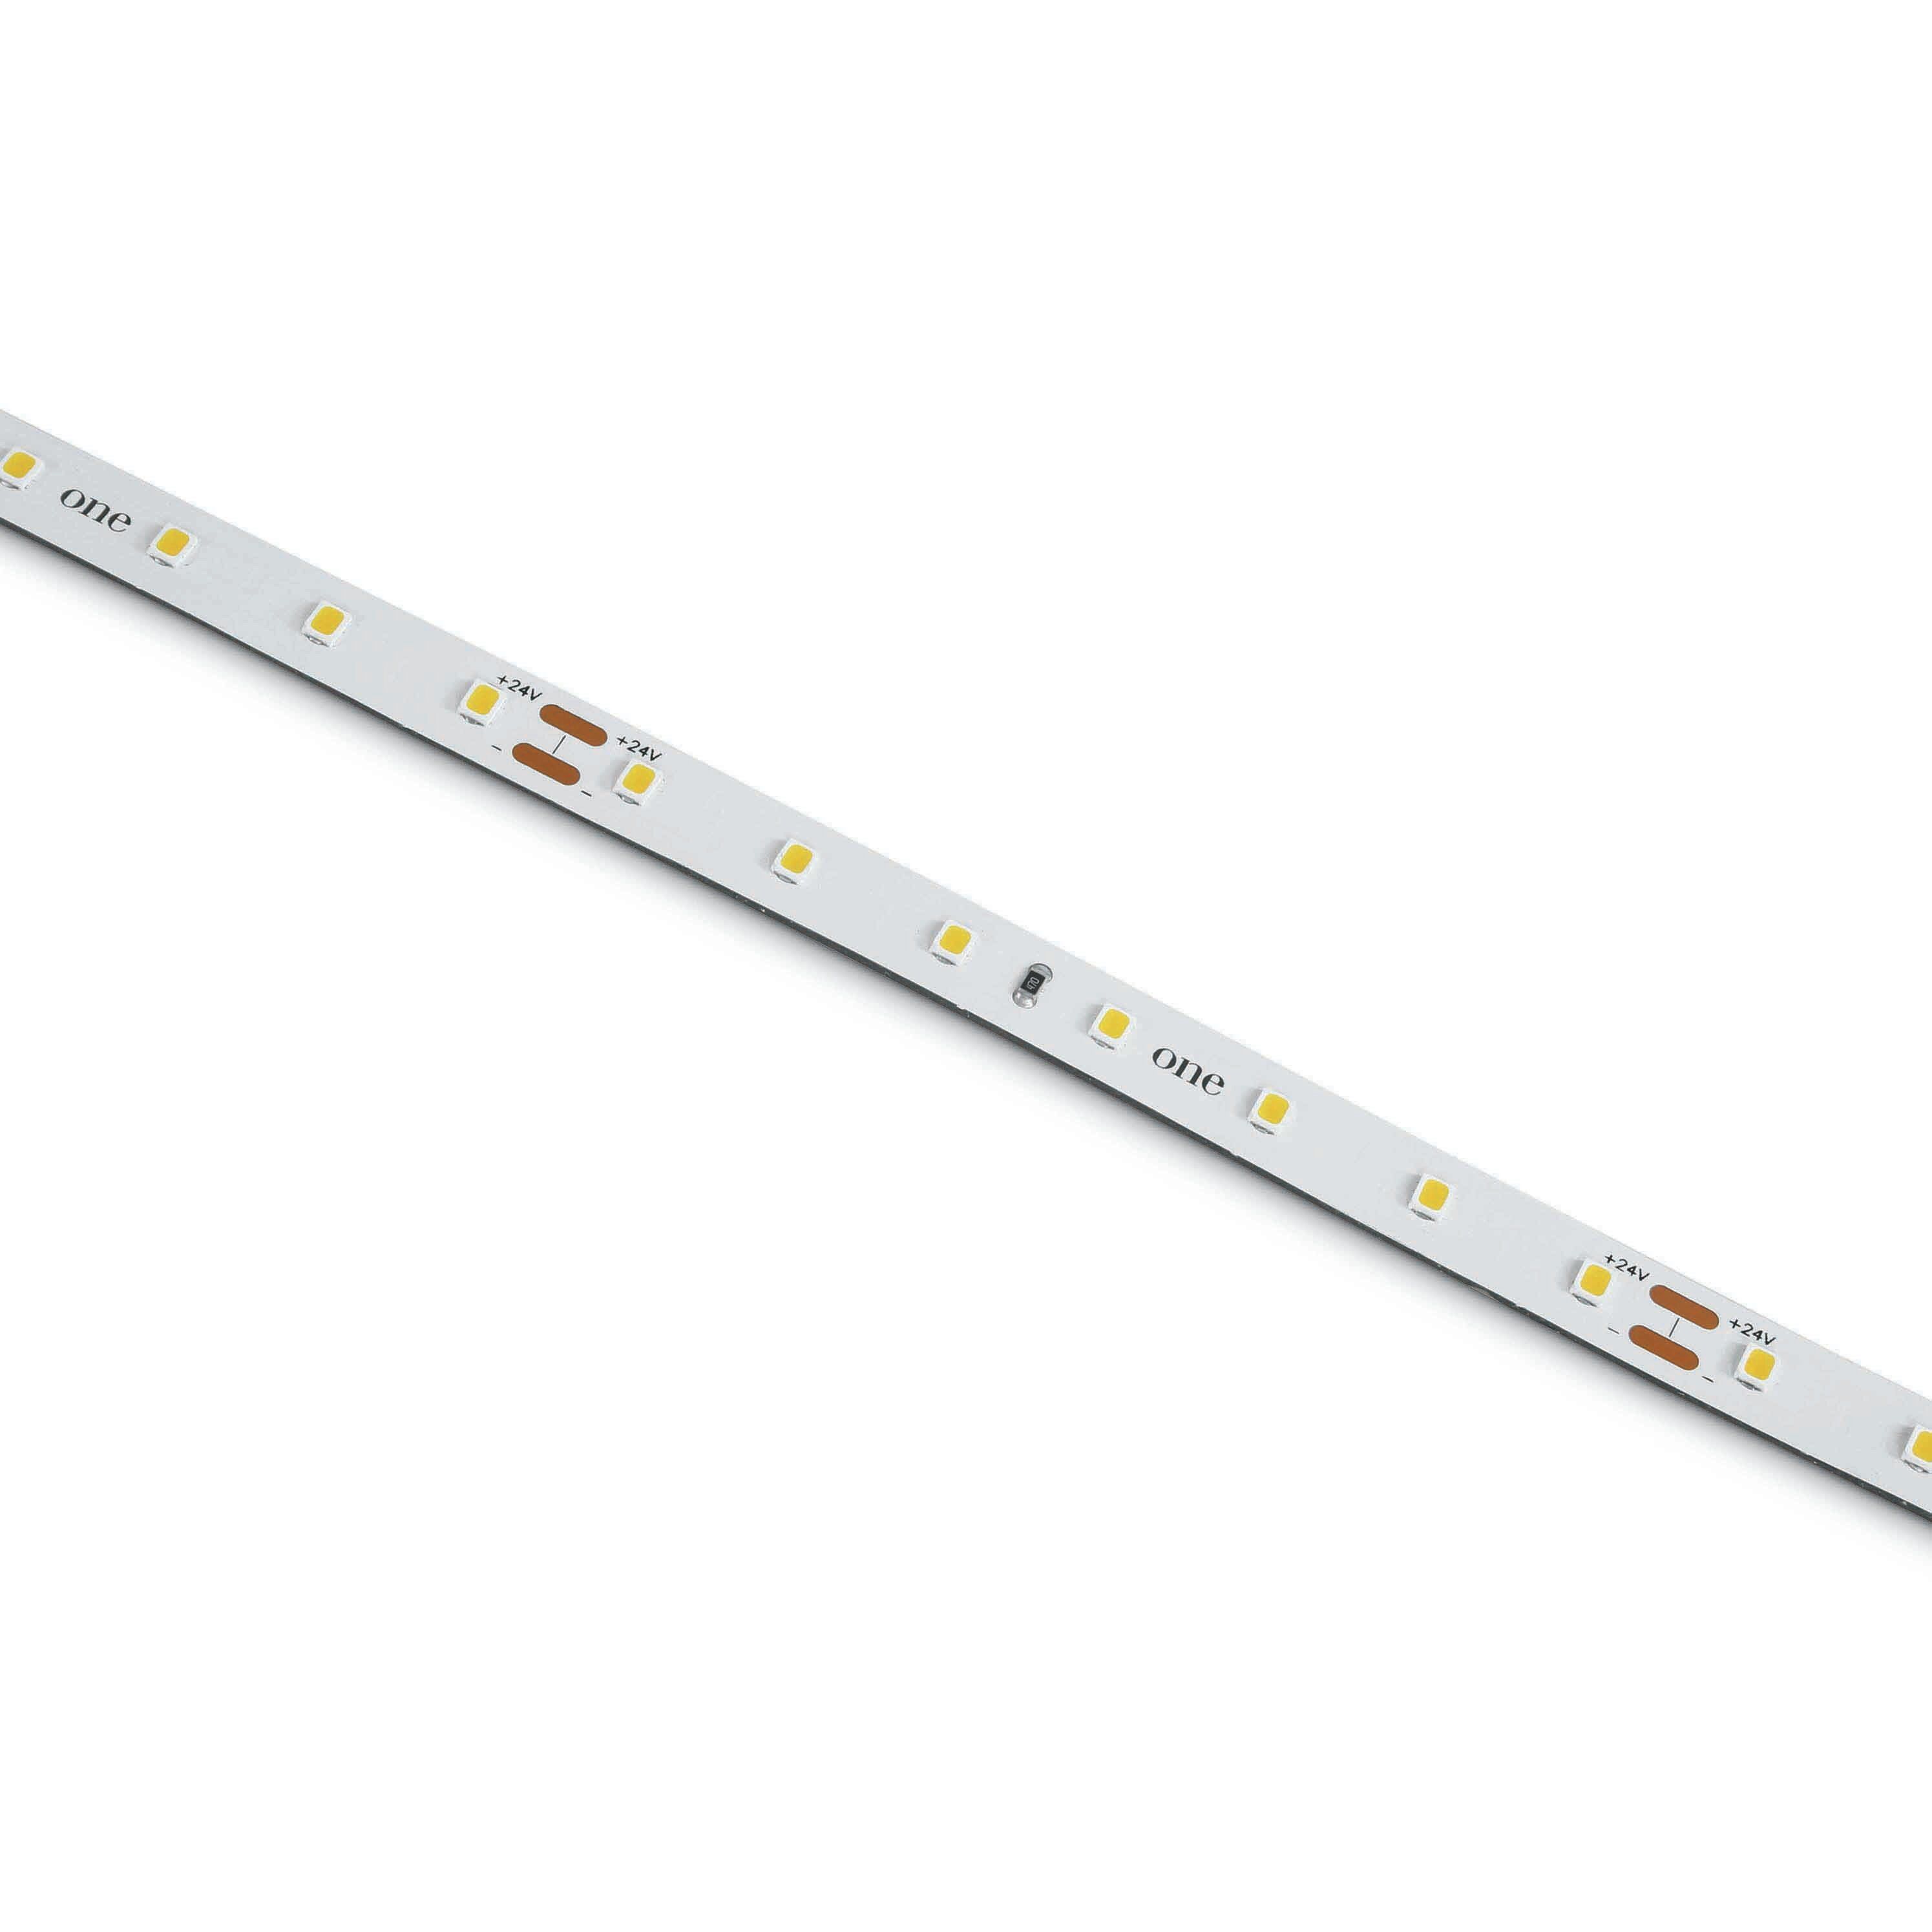 Luik impliciet Respectvol ONE Light LED strip - 1 cm breed, 500 cm lengte - 24Vdc - dimbaar - 14,4W  LED per meter - 2700K | Lichtkoning